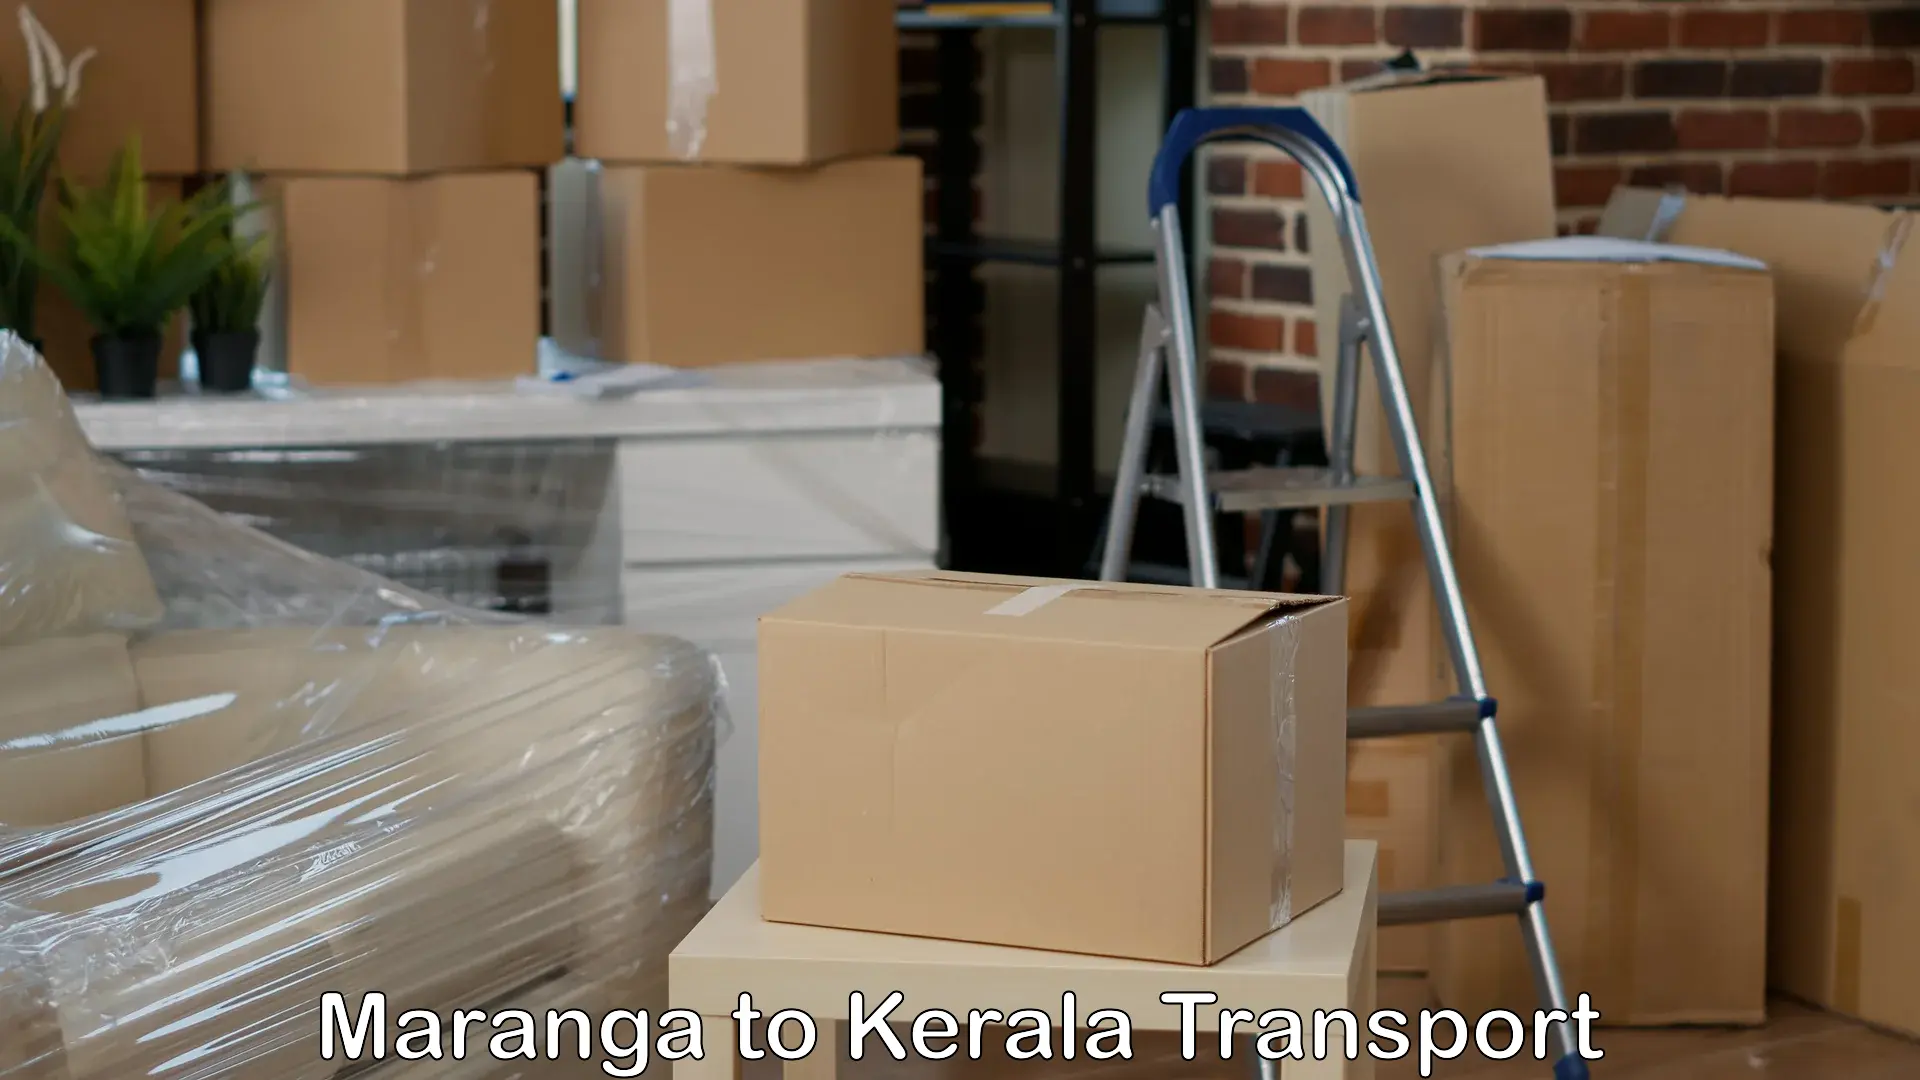 Air cargo transport services Maranga to Munnar